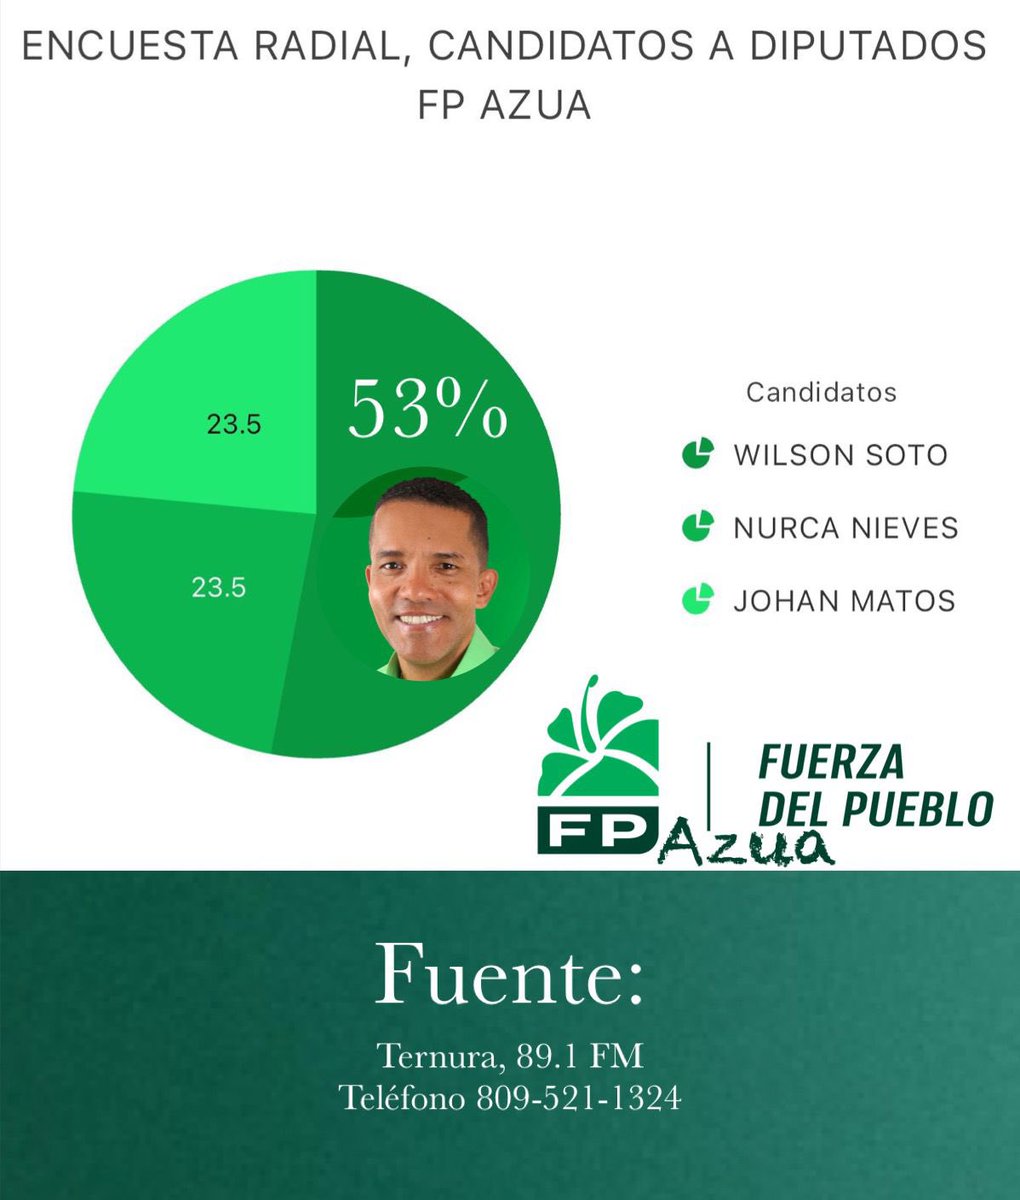 Mediante sondeo radial el candidato a diputado @ingwilsonsoto obtuvo el 53% de las llamadas a su favor quedando en un sólido primer lugar, en Azua vota 4 en la casilla de la @FPcomunica.